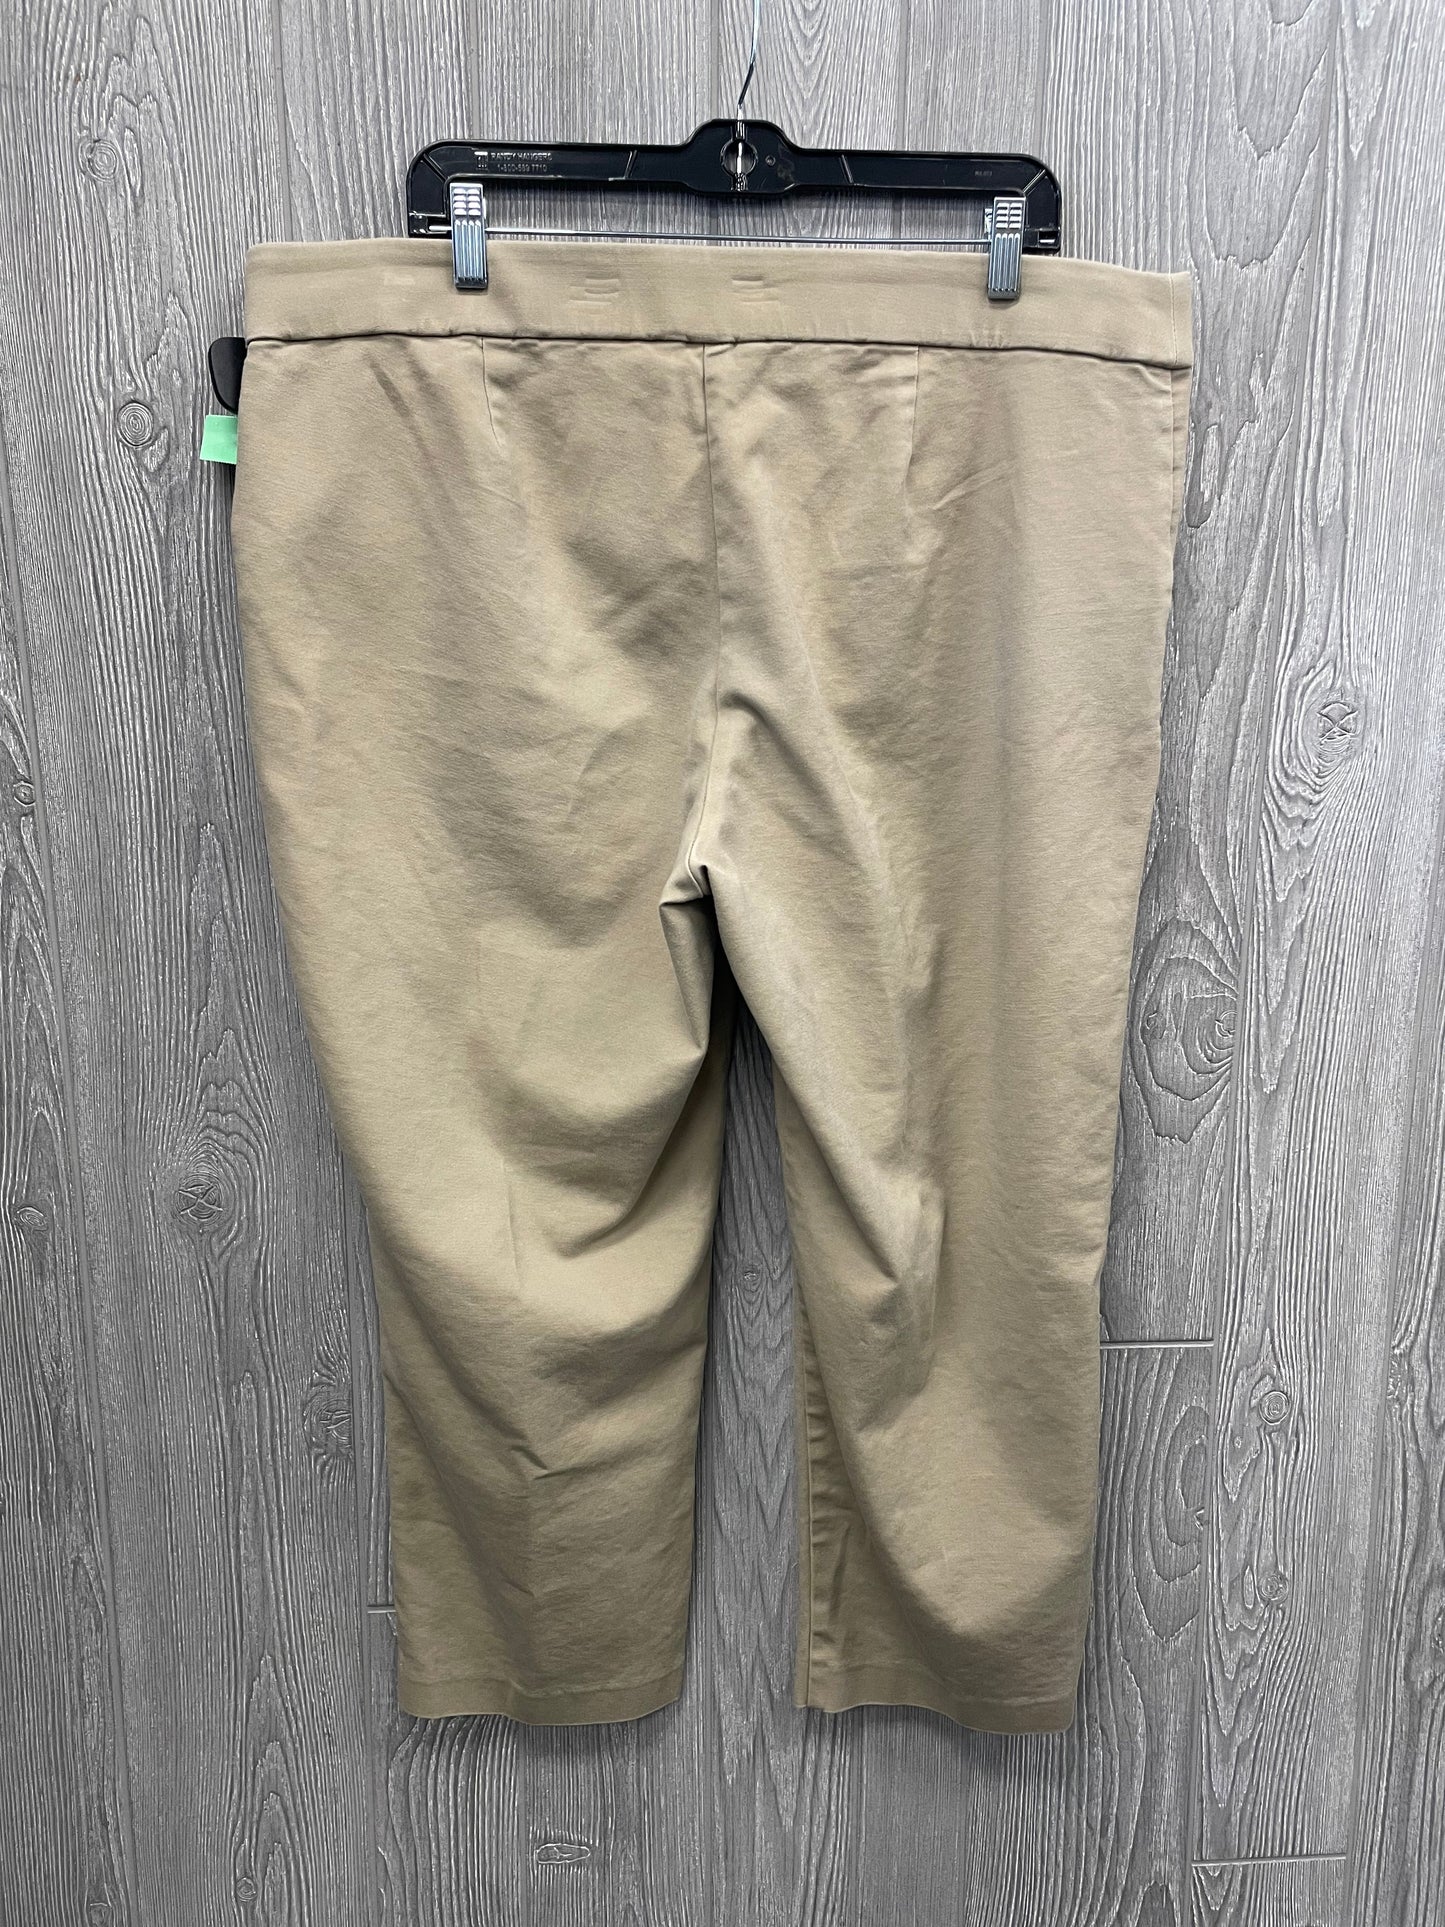 Pants Chinos & Khakis By Cj Banks  Size: 20